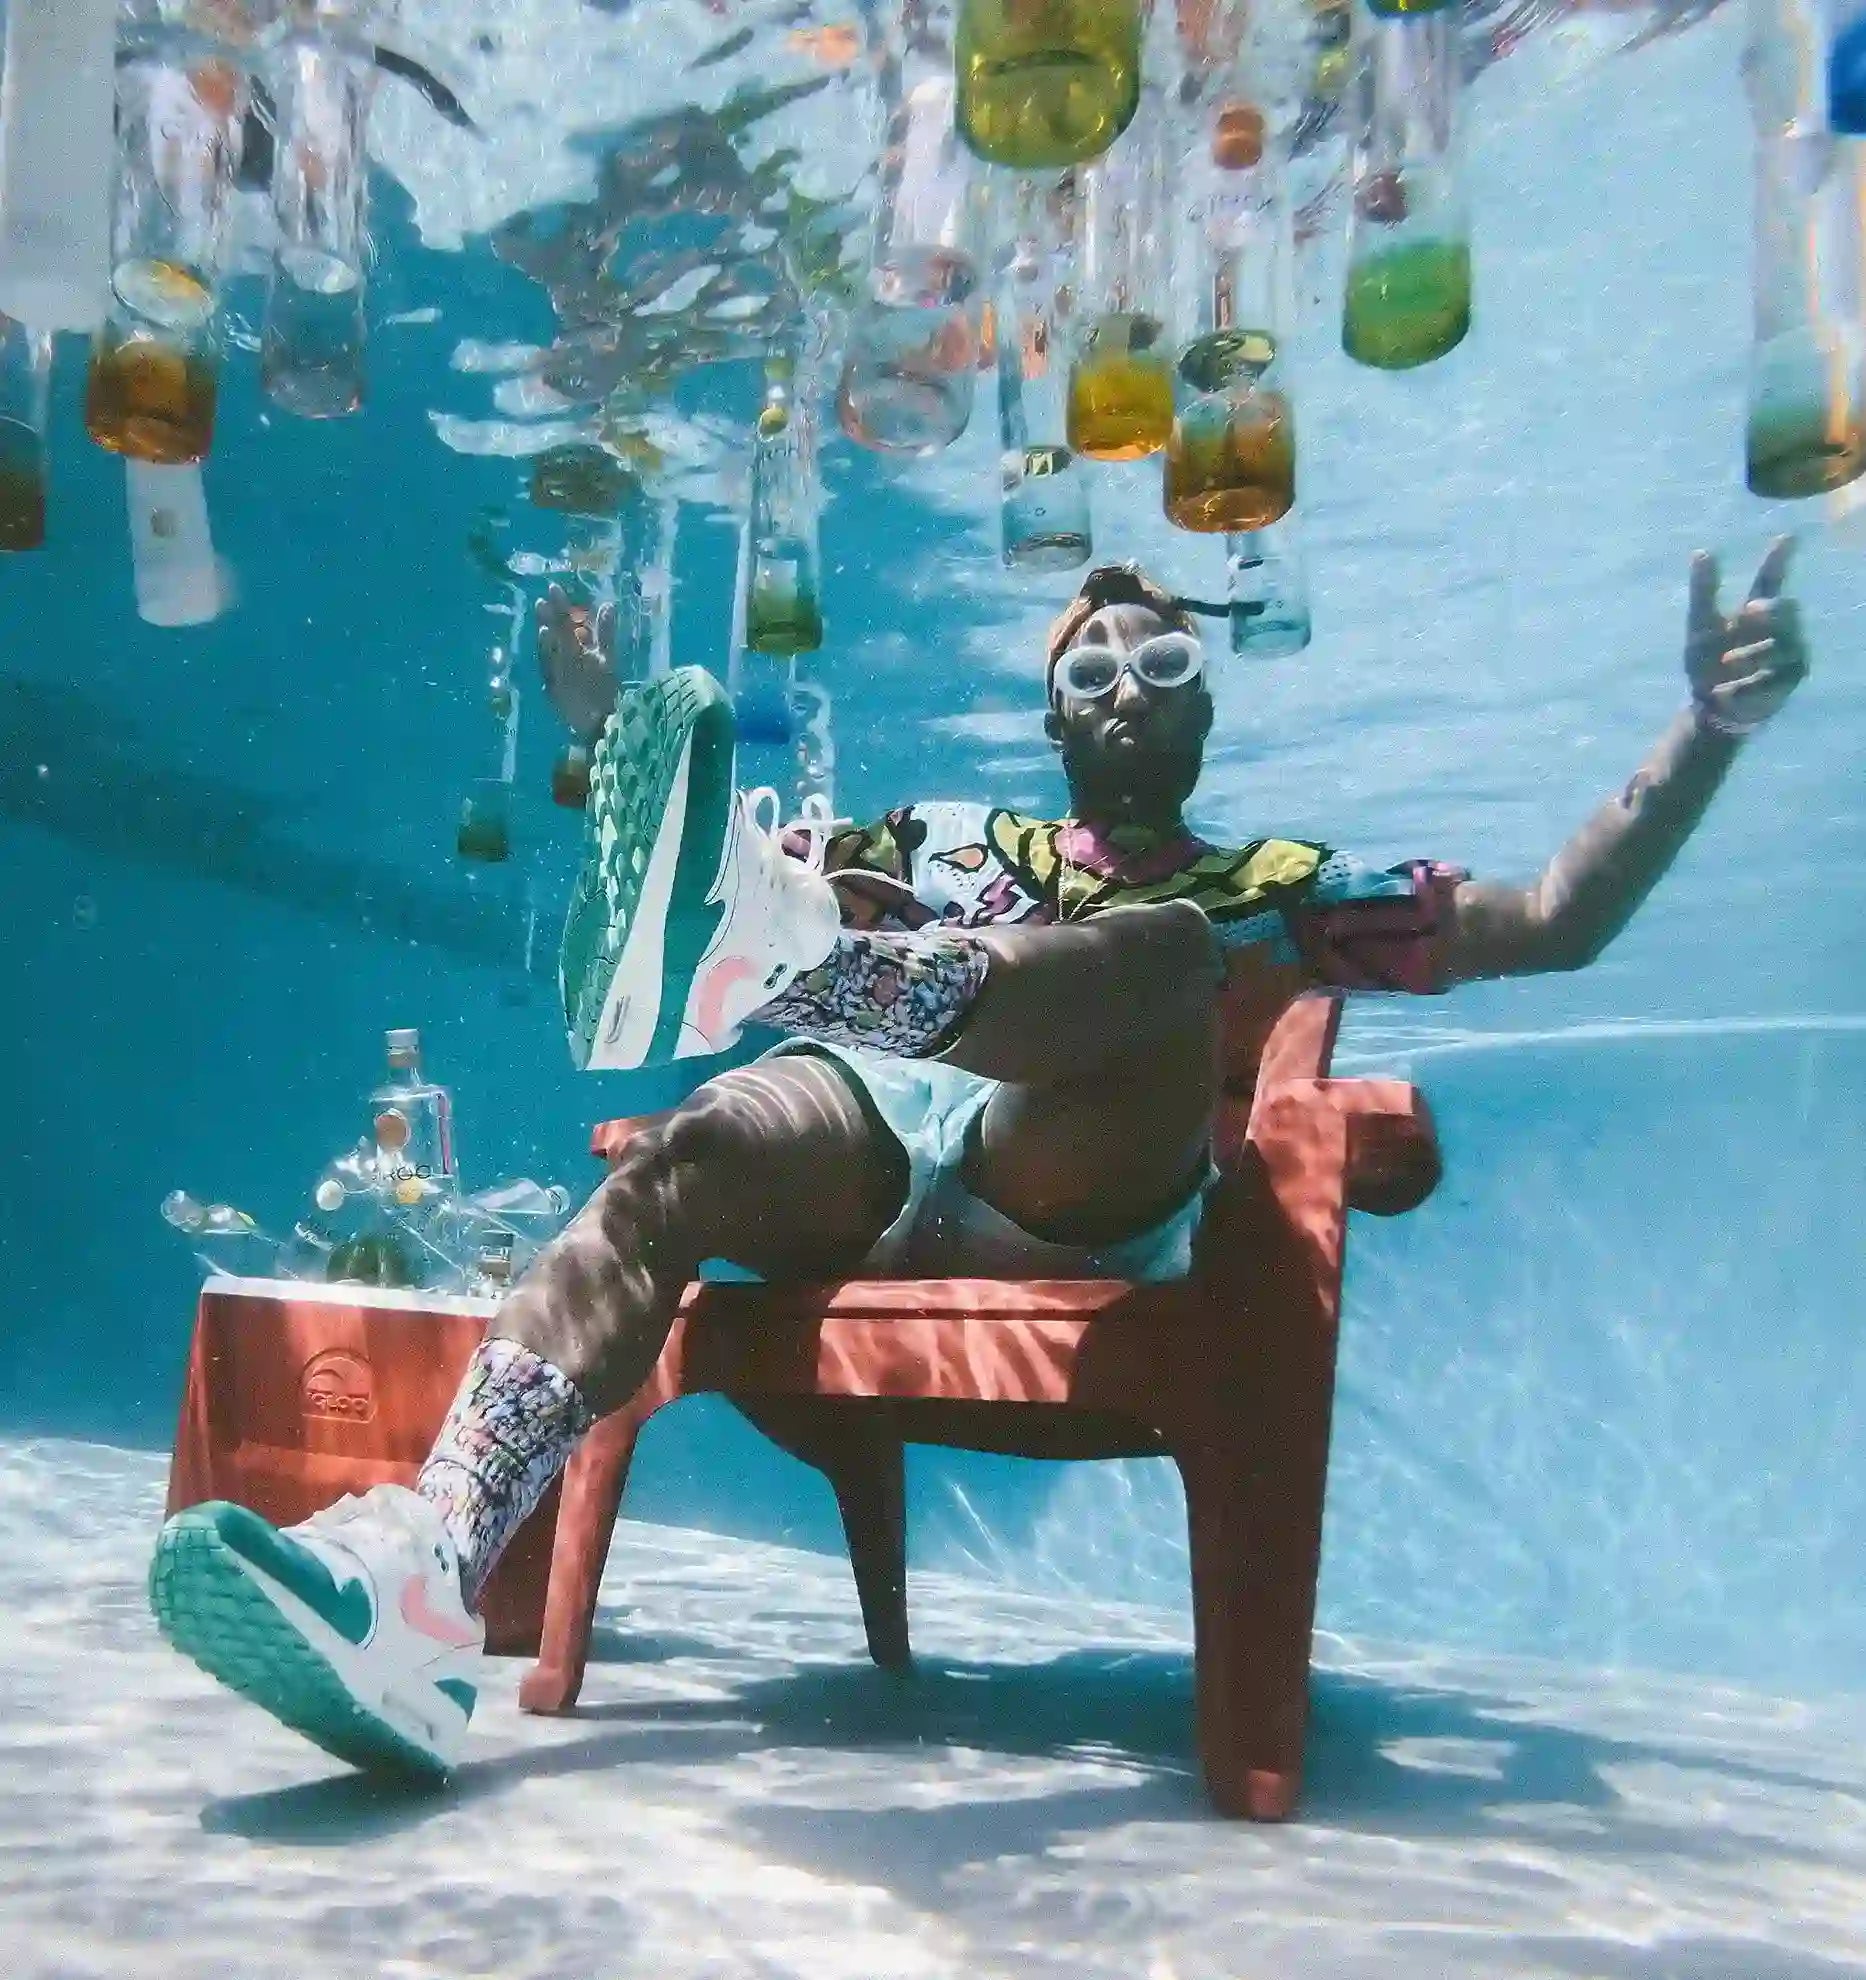 Mann unter Wasser sitzend mit schwimmenden Wasserflaschen